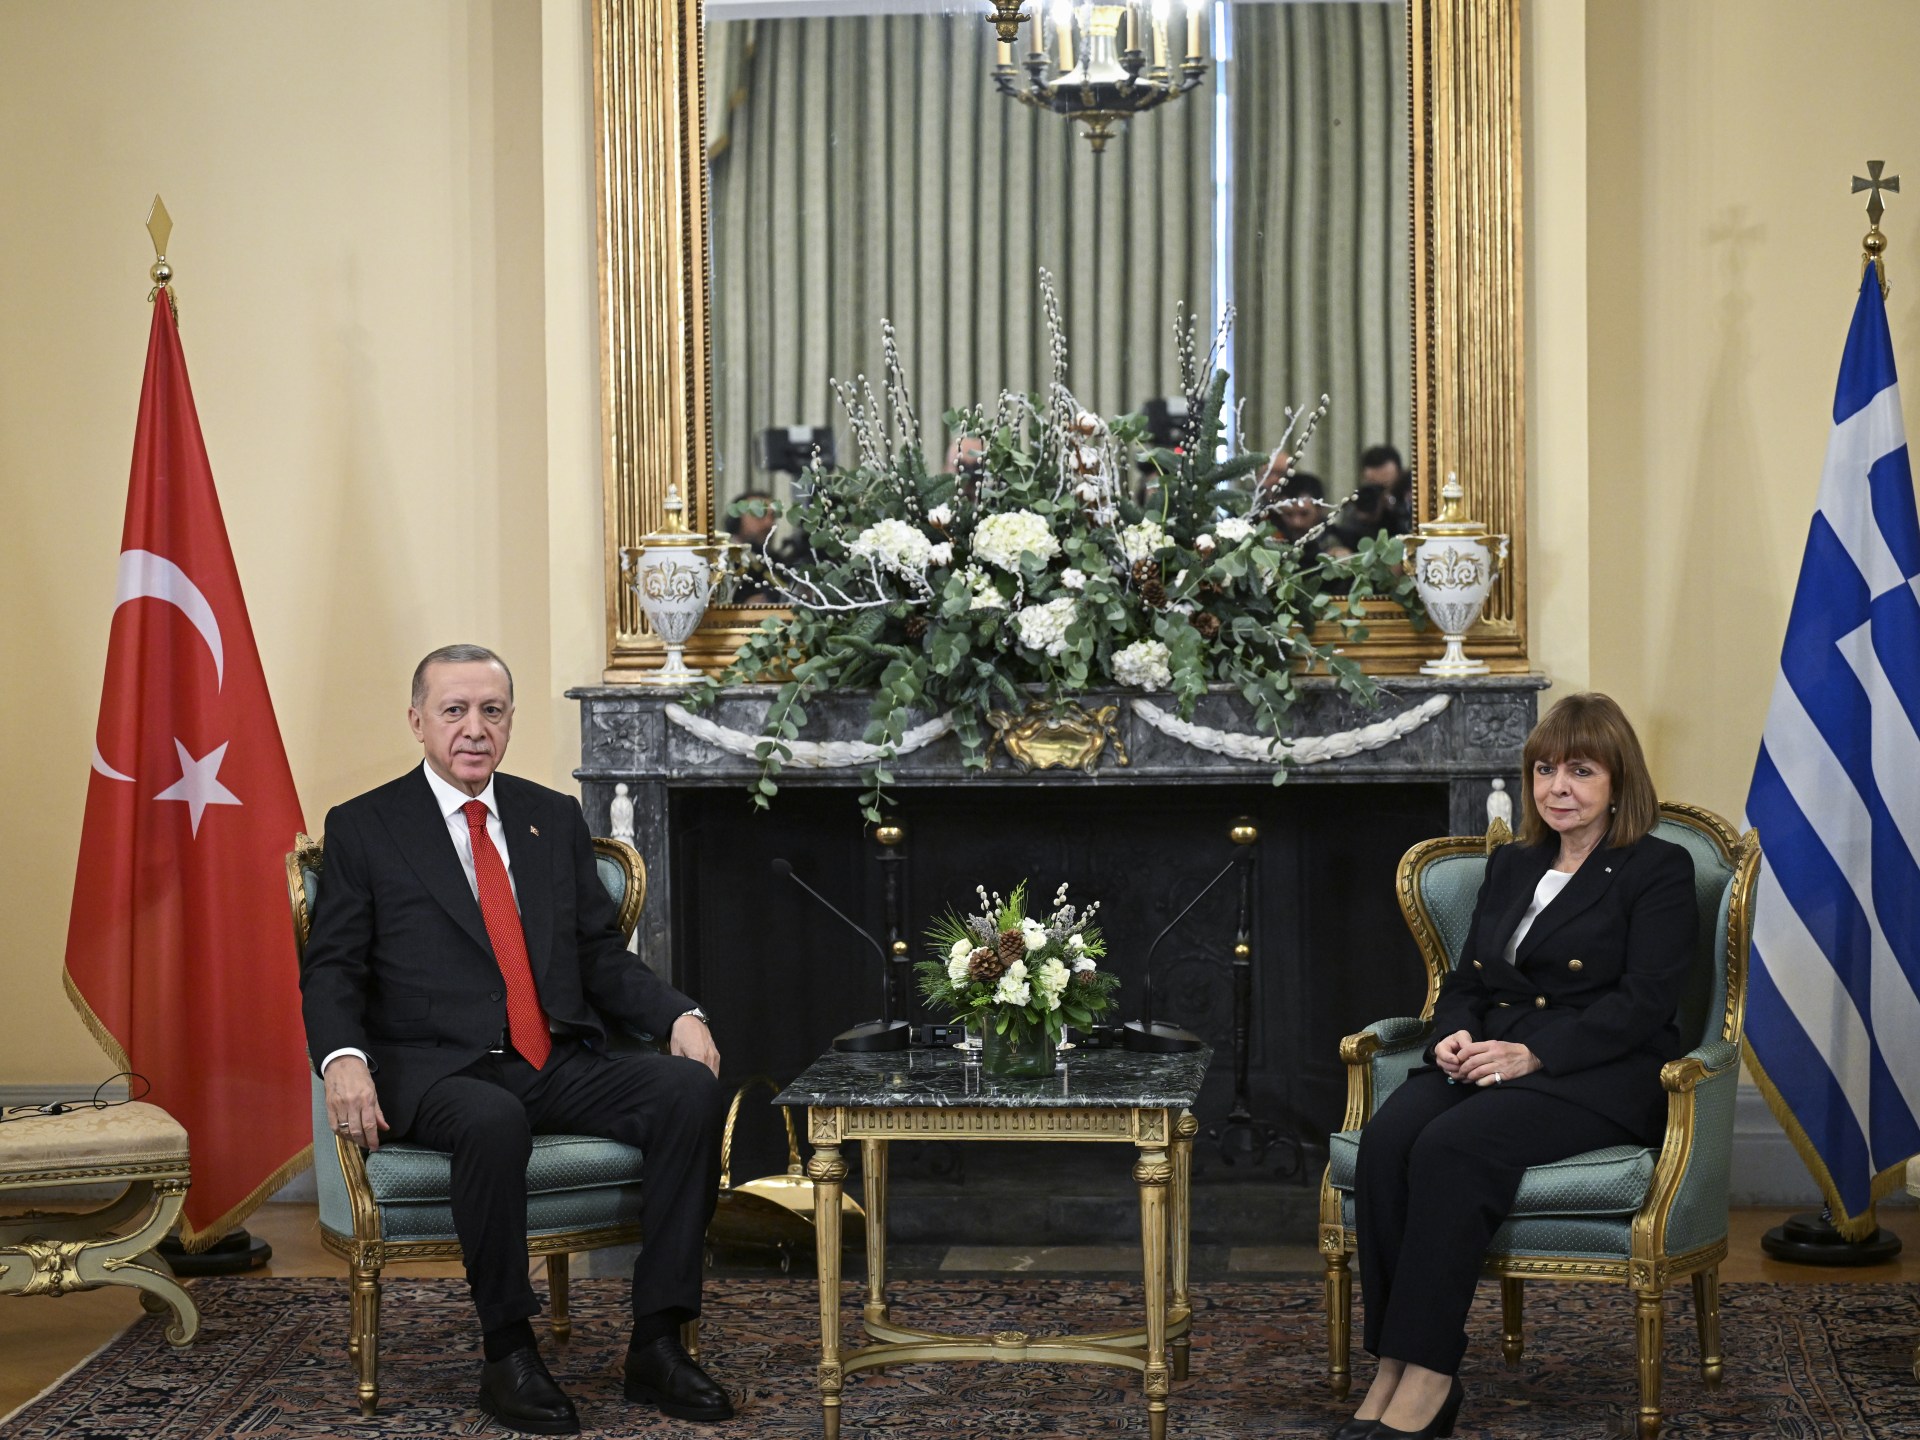 أردوغان يأمل بتدشين “عهد جديد” في العلاقات مع اليونان | أخبار – البوكس نيوز